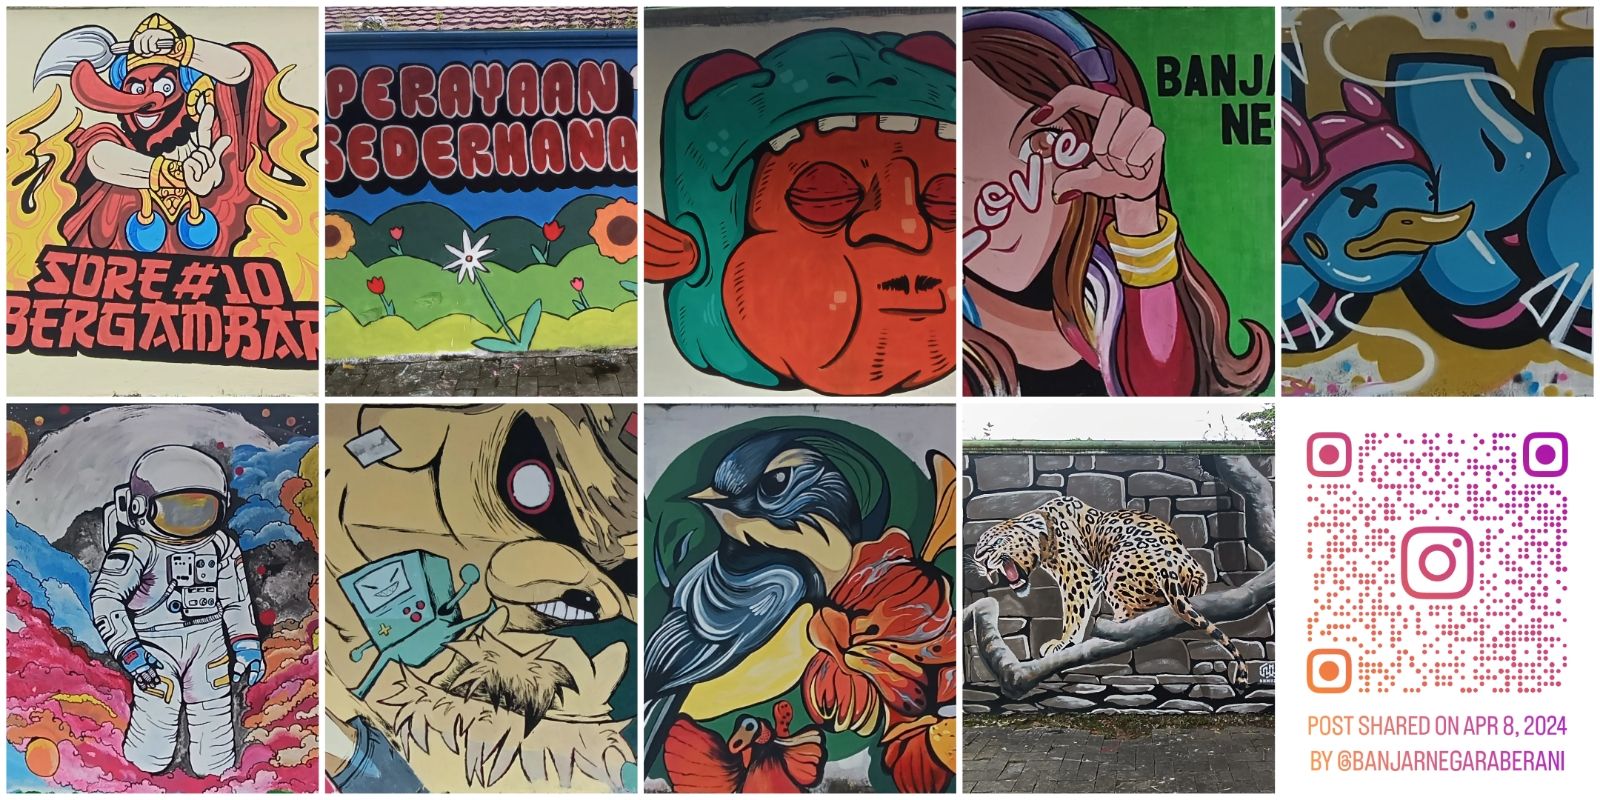 Karya seniman mural Banjarnegara di dinding TRMS Serulingmas